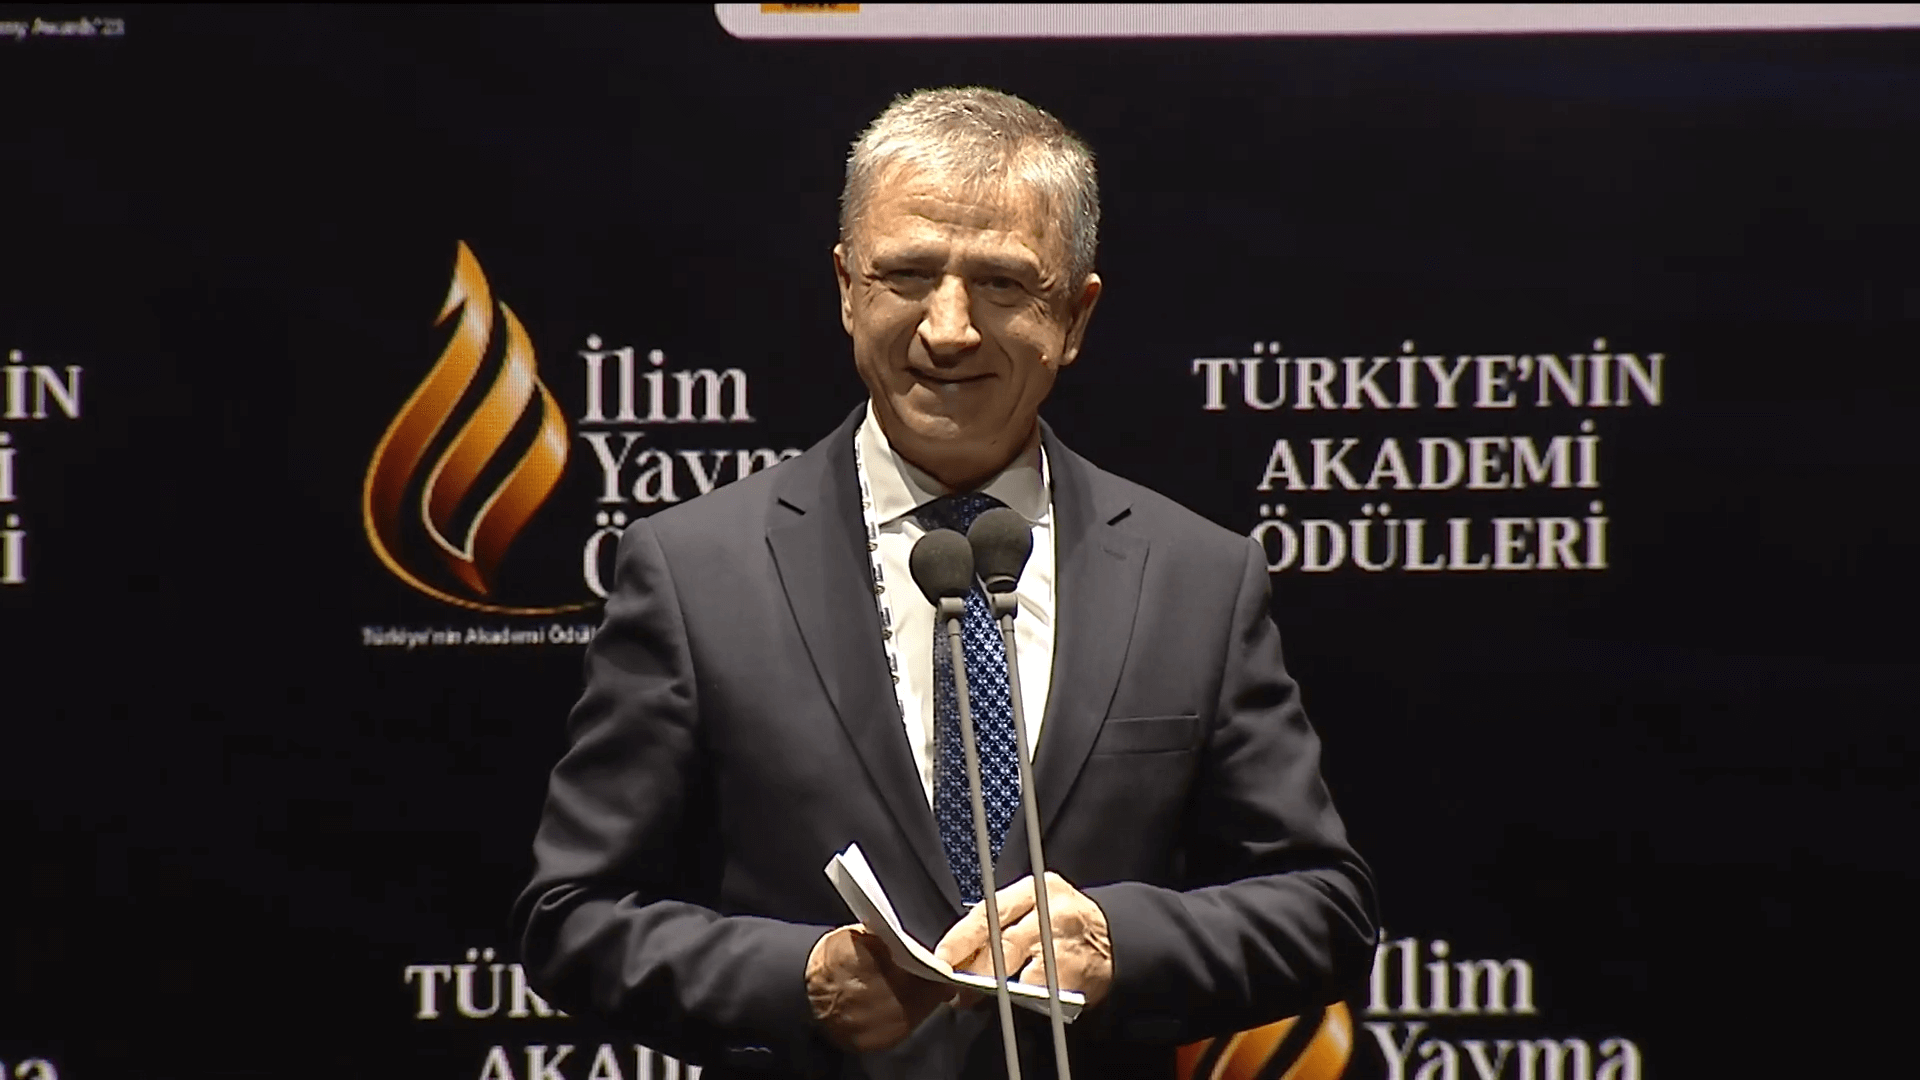 Prof. Dr. İbrahim Akduman, 2023 İlim Yayma Ödülleri'nde Tıbbi İnovasyon İçin En Büyük Ödülle Onurlandırıldı